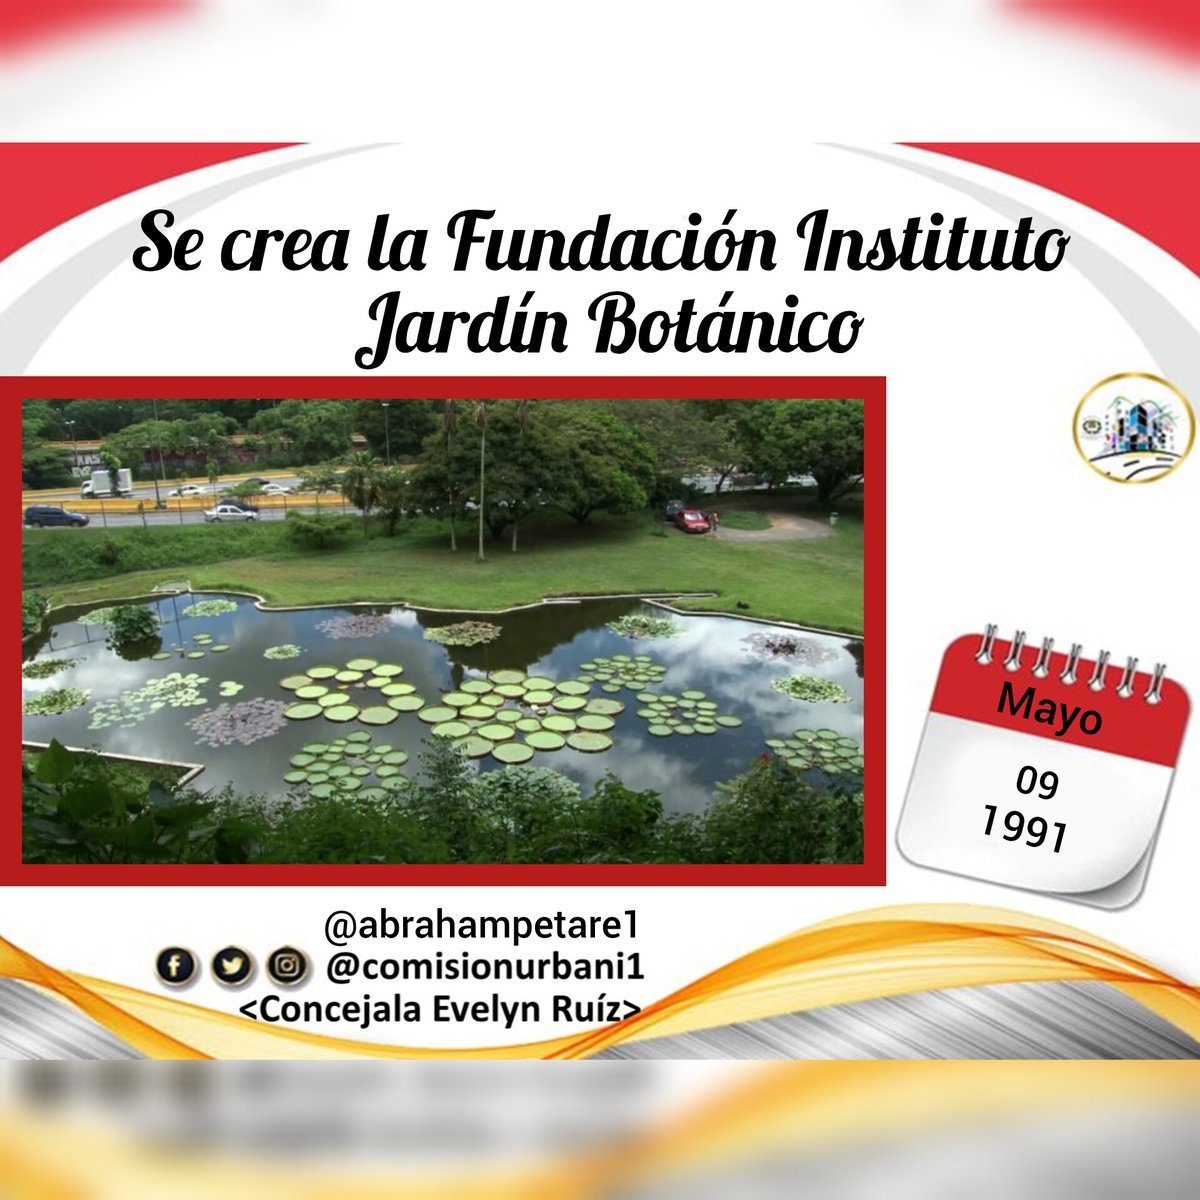 #09May 1991, Se crea la Fundación Instituto Jardín Botánico Su principal objetivo es coordinar, promover y fomentar las actividades relacionadas con la investigación botánica venezolana. #ComsiónDeUrbanismo Concejal @AbrahamPetare1 Concejala @EvelynRuizPSUV_ #NicoEsUnDuro